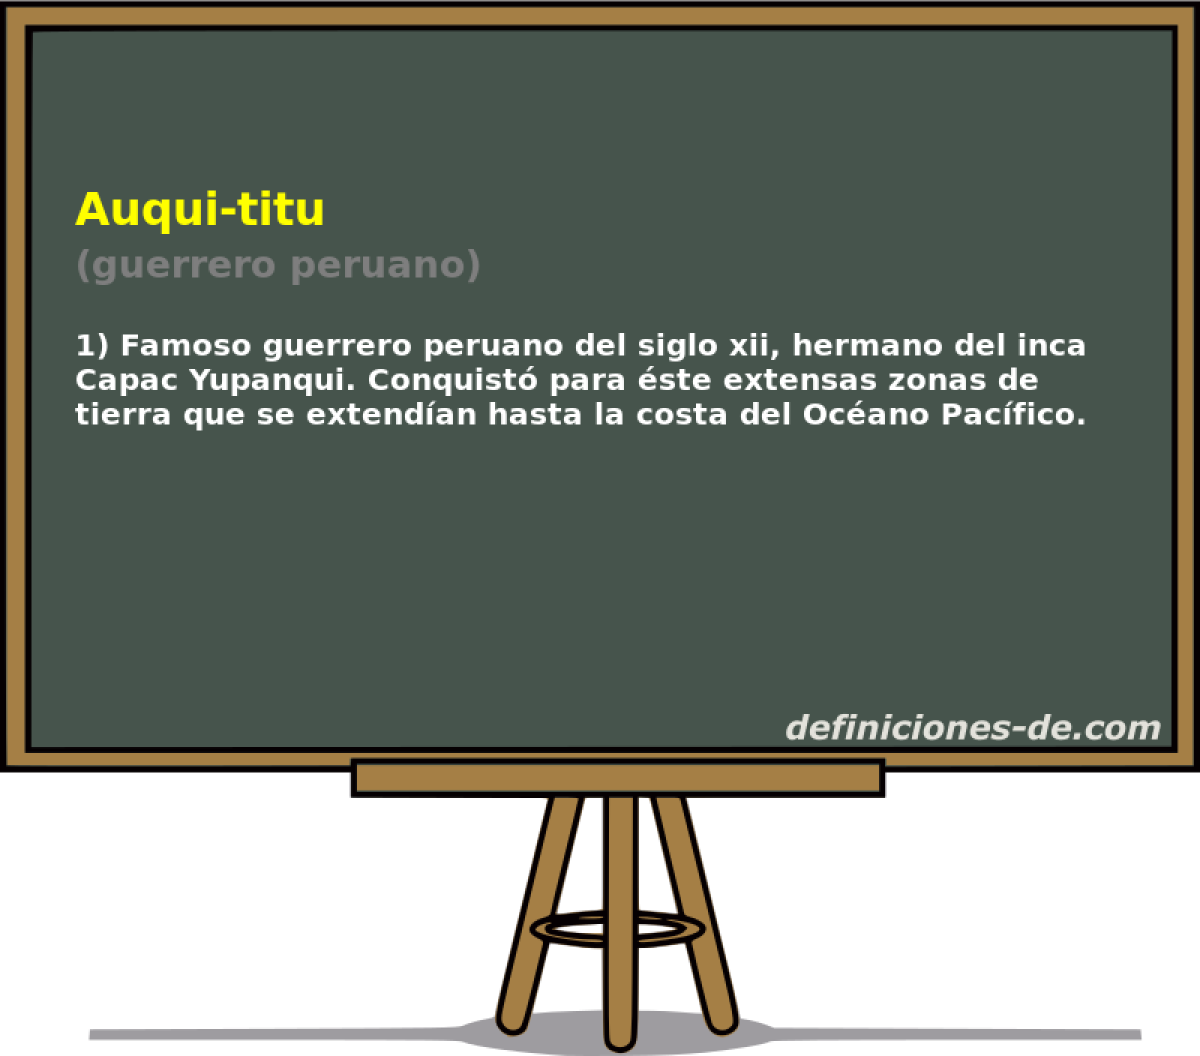 Auqui-titu (guerrero peruano)